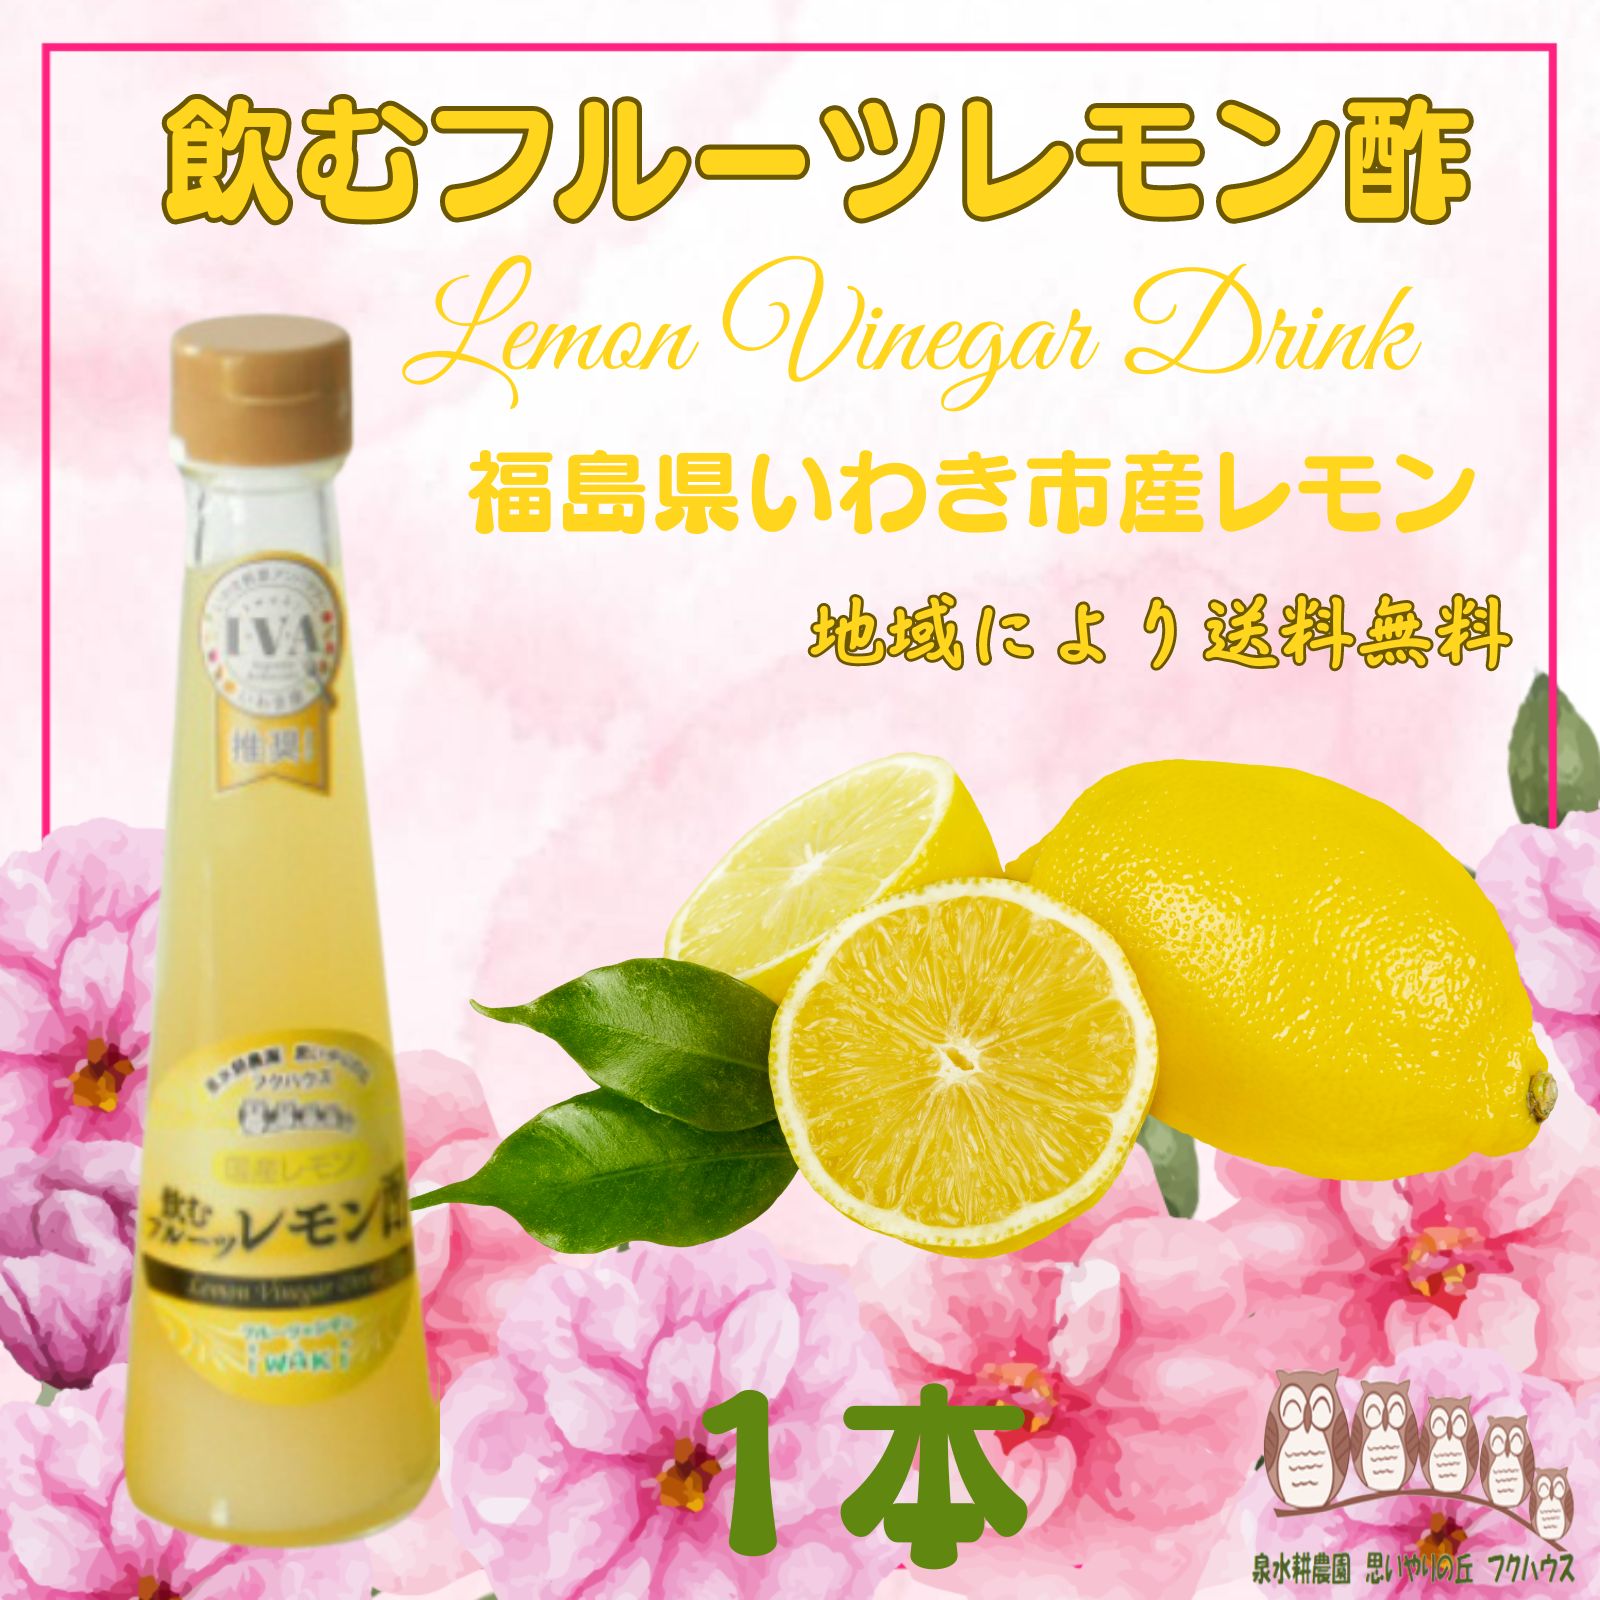 【 飲むフルーツ レモン酢 】 1瓶200ml 1本入り 果